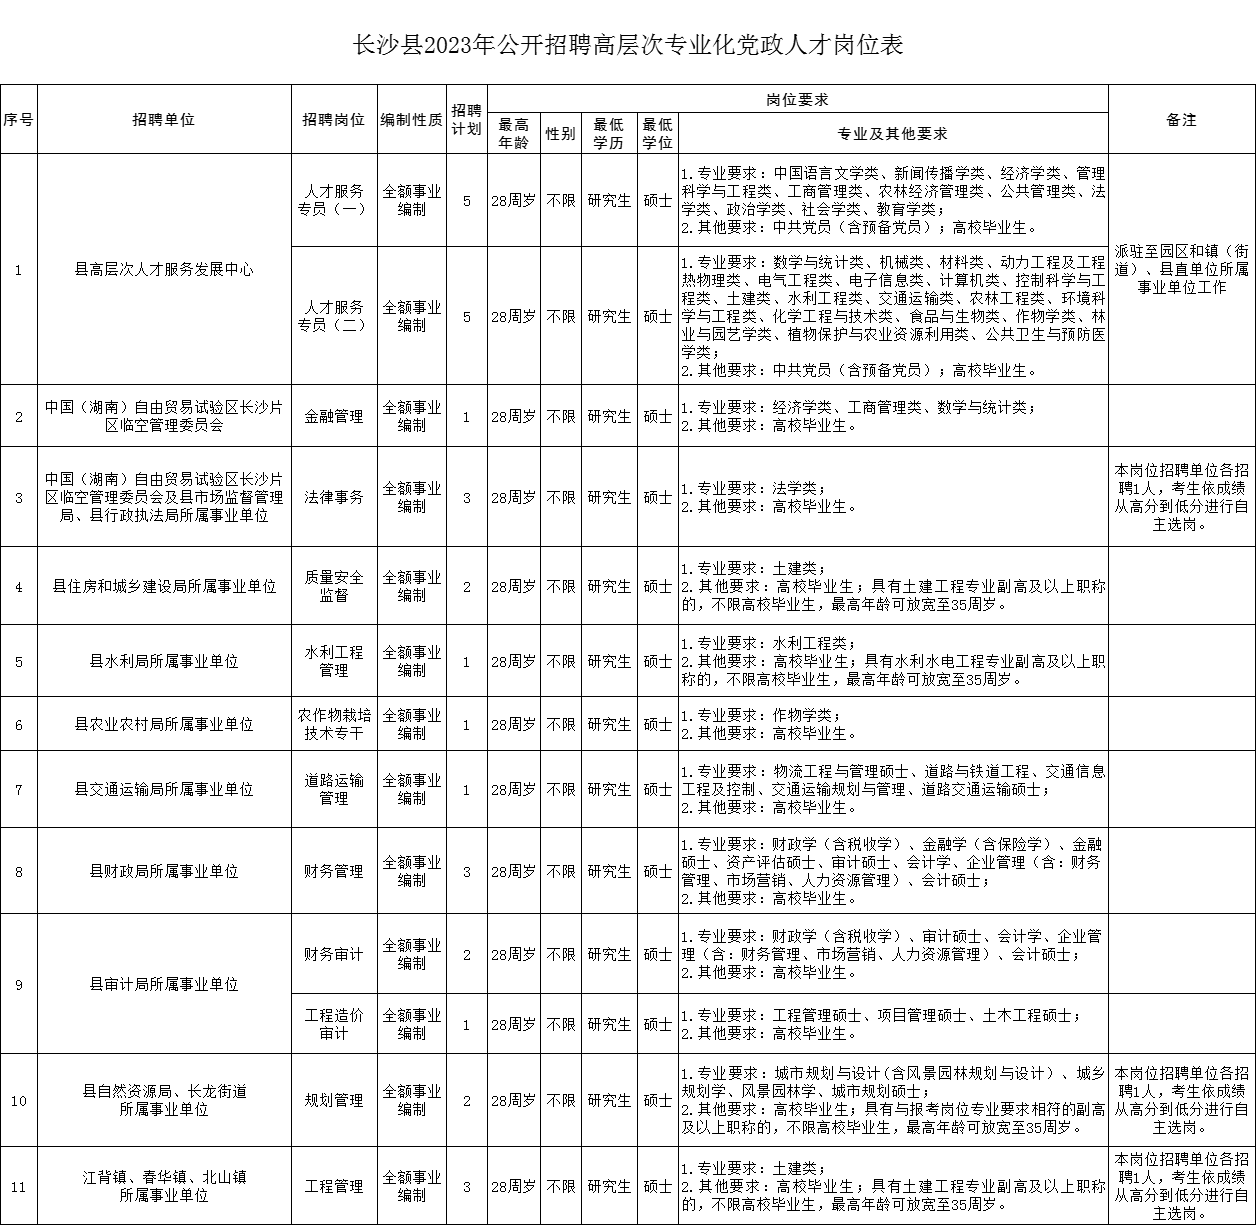 长沙县2023年公开招聘高层次专业化党政人才岗位表.png